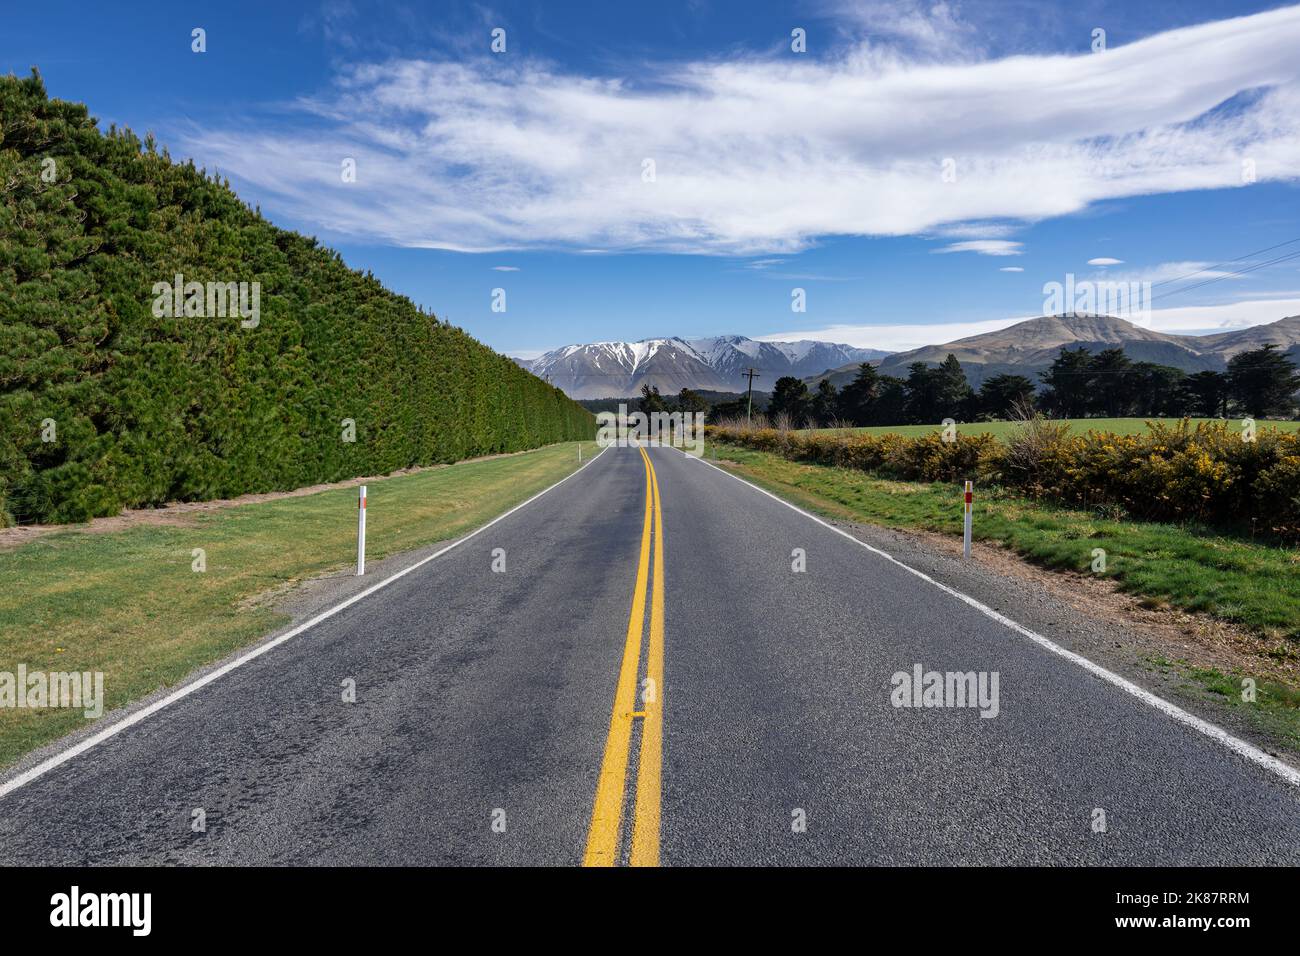 Paysage de Canterbury, île du Sud de la Nouvelle-Zélande, pris sur la route panoramique intérieure 72, avec des buissons sauvages et des Alpes enneigées en arrière-plan. Banque D'Images